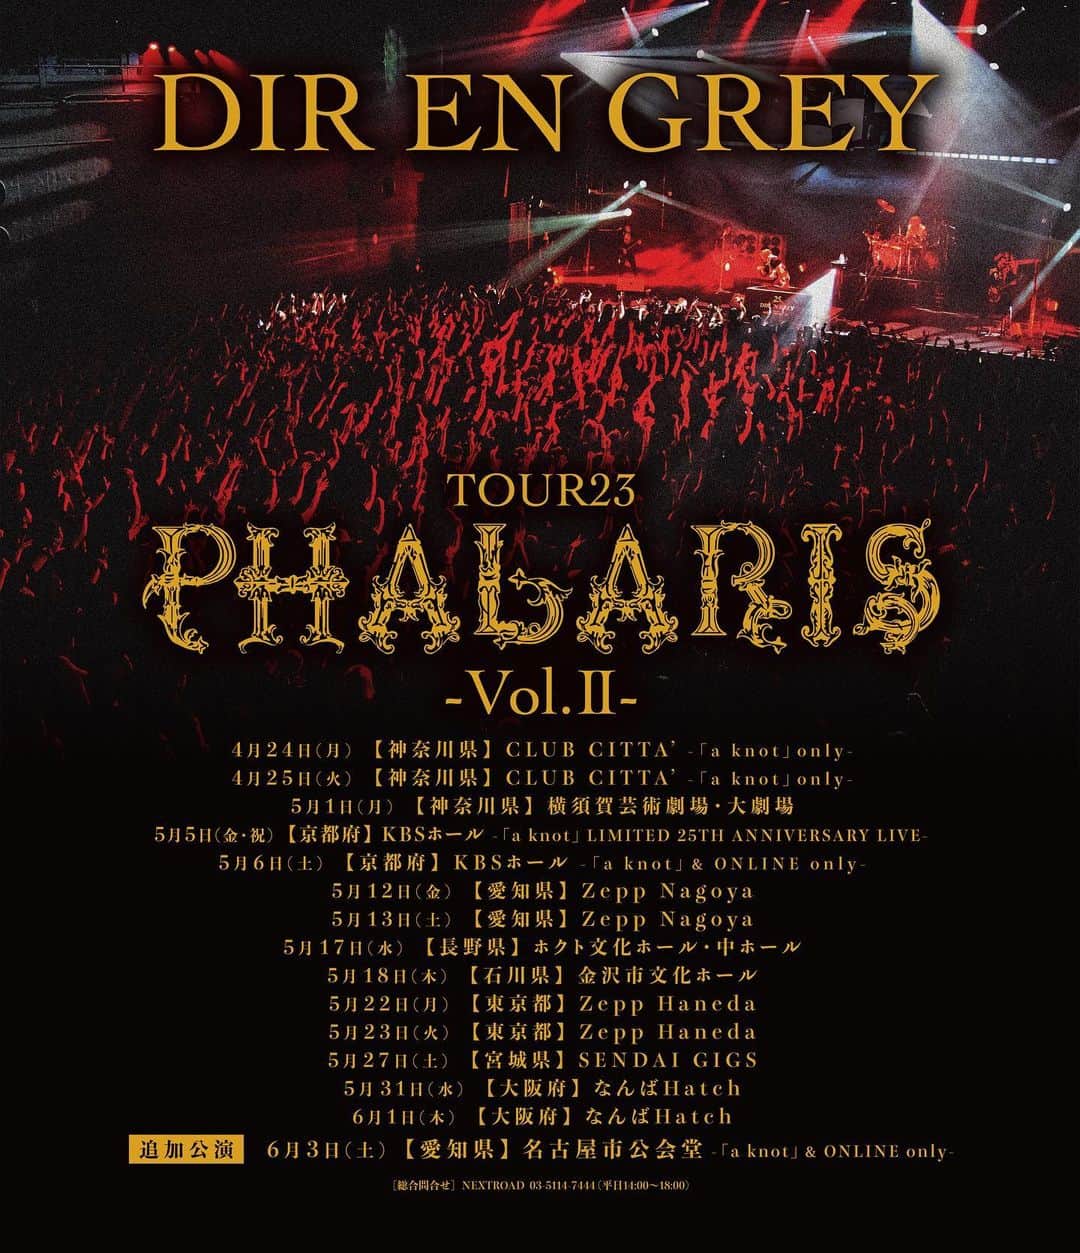 DIR EN GREYのインスタグラム：「. ［🇯🇵 JP 🇯🇵］［🇬🇧 EN 🇺🇸］ DIR EN GREY “TOUR23 PHALARIS -Vol.II-”追加公演が名古屋で開催決定！  2022年に発表された通算11枚目のアルバム『PHALARIS』を冠した全国ツアー“TOUR23 PHALARIS -Vol.II-”の追加公演が決定いたしました。 2023年6月3日(土)に名古屋市公会堂(愛知県)にて開催される本公演は、公式ファンクラブ 「a knot」と公式モバイルサイト「DIR EN GREY ONLINE」会員対象の限定LIVEとなります。  DIR EN GREY TOUR23 PHALARIS -Vol.II-  2023年6月3日(土) 【愛知県】名古屋市公会堂 -「a knot」 & ONLINE only- (追加公演)  [開場/開演] 17:15/18:00 [席種・チケット料金] ・Exclusive Ticket ￥19,800(諸経費込) ・「a knot」指定席 ￥9,000(諸経費込) ・一般指定席 ￥9,800(諸経費込)  [問] NEXTROAD 03-5114-7444(平日14:00～18:00)  ≪チケットスケジュール≫ ■OFFICIAL FAN CLUB「a knot」抽選受付 [対象者] 「a knot」会員(2023年5月1日時点有効会員) ※2023年4月30日(日)までにご入会(ご入金)いただいた方が対象となります。 [対象席種] ・Exclusive Ticket ￥19,800(諸経費込) ・「a knot」指定席 ￥9,000(諸経費込) [受付場所] TicketTown [受付期間] 2023年5月14日(日)12:00～5月17日(水)23:59 [入金期間] 2023年5月19日(金)14:00～5月22日(月)23:59  ■DIR EN GREY ONLINE抽選受付 [対象者] DIR EN GREY ONLINE月額有料会員 ※受付期間中にDIR EN GREY ONLINEにご入会いただいた方が対象となります。 [対象席種] ・一般指定席 ￥9,800(諸経費込)  [受付場所] イープラス [受付期間] 2023年5月22日(月)10:00～5月24日(水)21:00 [入金期間] 2023年5月26日(金)13:00～5月28日(日)21:00  ◤◢◤◢◤◢ ↓ 🇬🇧 EN 🇺🇸 ↓ ◤◢◤◢◤◢  An additional show to the nation-wide tour “TOUR23 PHALARIS -Vol.II-”, taking its title from the band’s 11th album 『PHALARIS』 (2022), has just been announced!  This concert is going to take place at NAGOYA CIVIC ASSEMBLY HALL (Aichi Prefecture) on June 3rd (Sat.), and it is going to be limited to members of the Official Fan Club ｢a knot｣ and Official Mobile Site 「DIR EN GREY ONLINE」.  DIR EN GREY TOUR23 PHALARIS -Vol.II-  2023/6/3(Sat.) 【AICHI】NAGOYA CIVIC ASSEMBLY HALL -｢a knot｣ & ONLINE only- (Additional Show)  [OPEN / START] 17:15 / 18:00   [SEATS・TICKETS] ・Exclusive Ticket ￥19,800(All fees included) ・｢a knot｣ Reserved Seats ￥9,000(All fees included) ・General Reserved Seats ￥9,800(All fees included)  Check all the details at the official website news and tour section!」